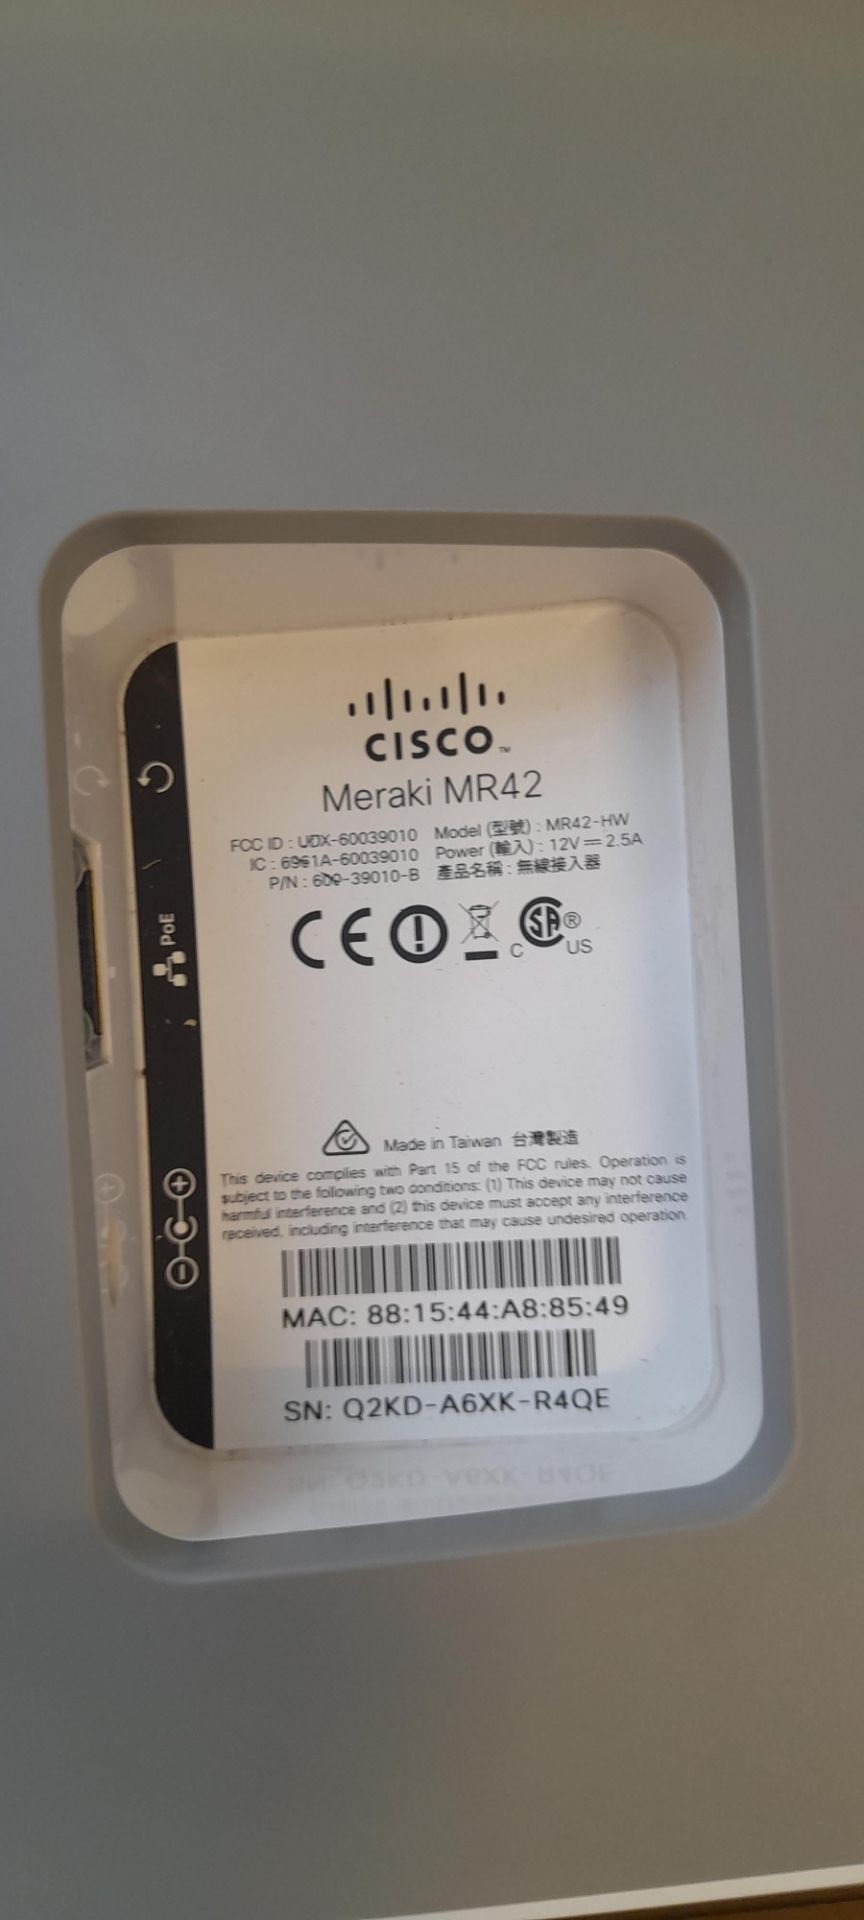 Cisco Meraki, MR42, S/N: Q2KD-A6XK-R4QE - Image 3 of 3